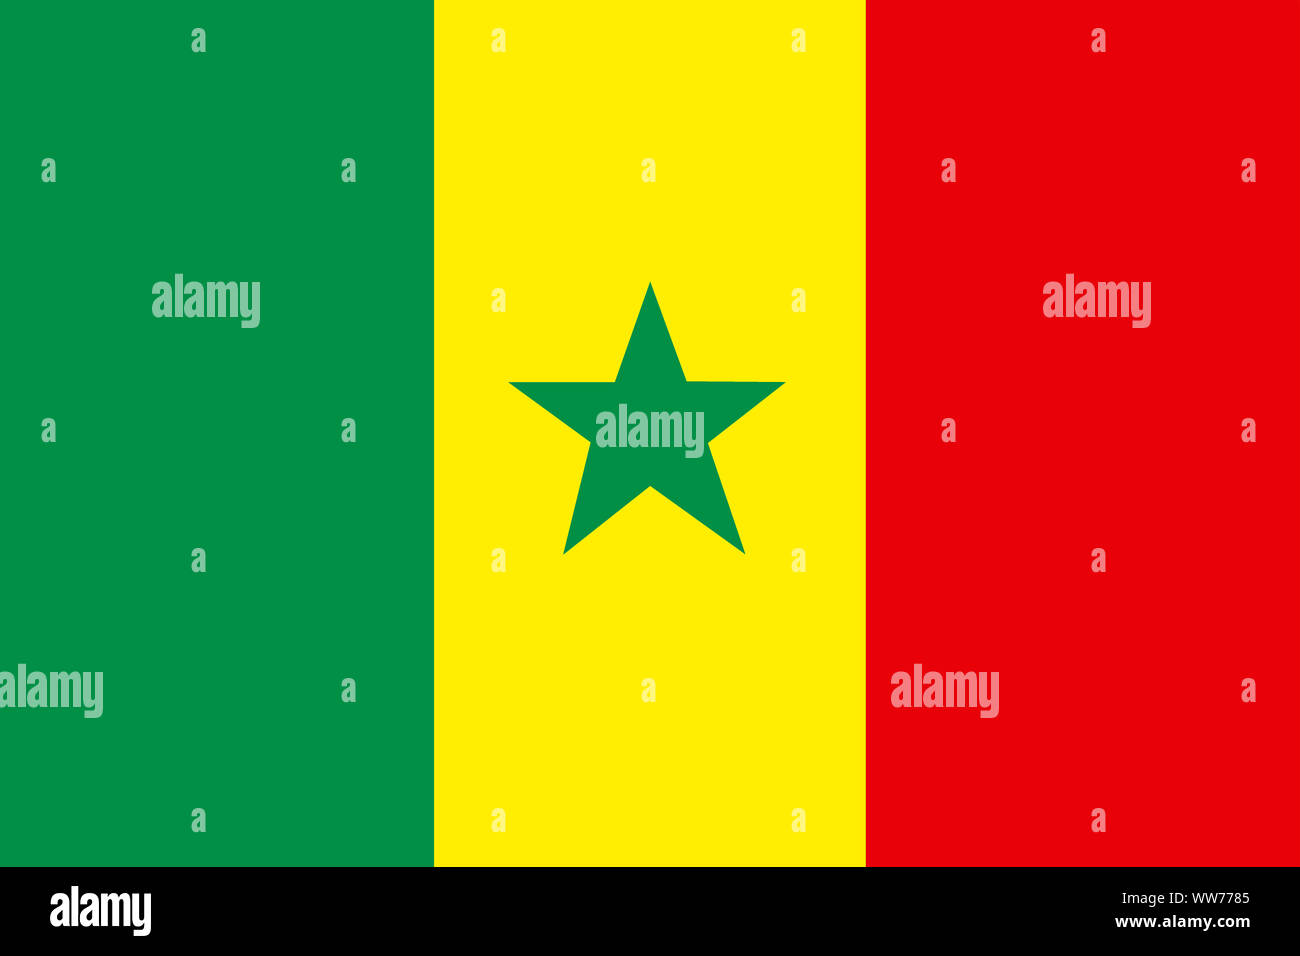 Un drapeau Sénégal illustration fond vert jaune rouge vert star Banque D'Images